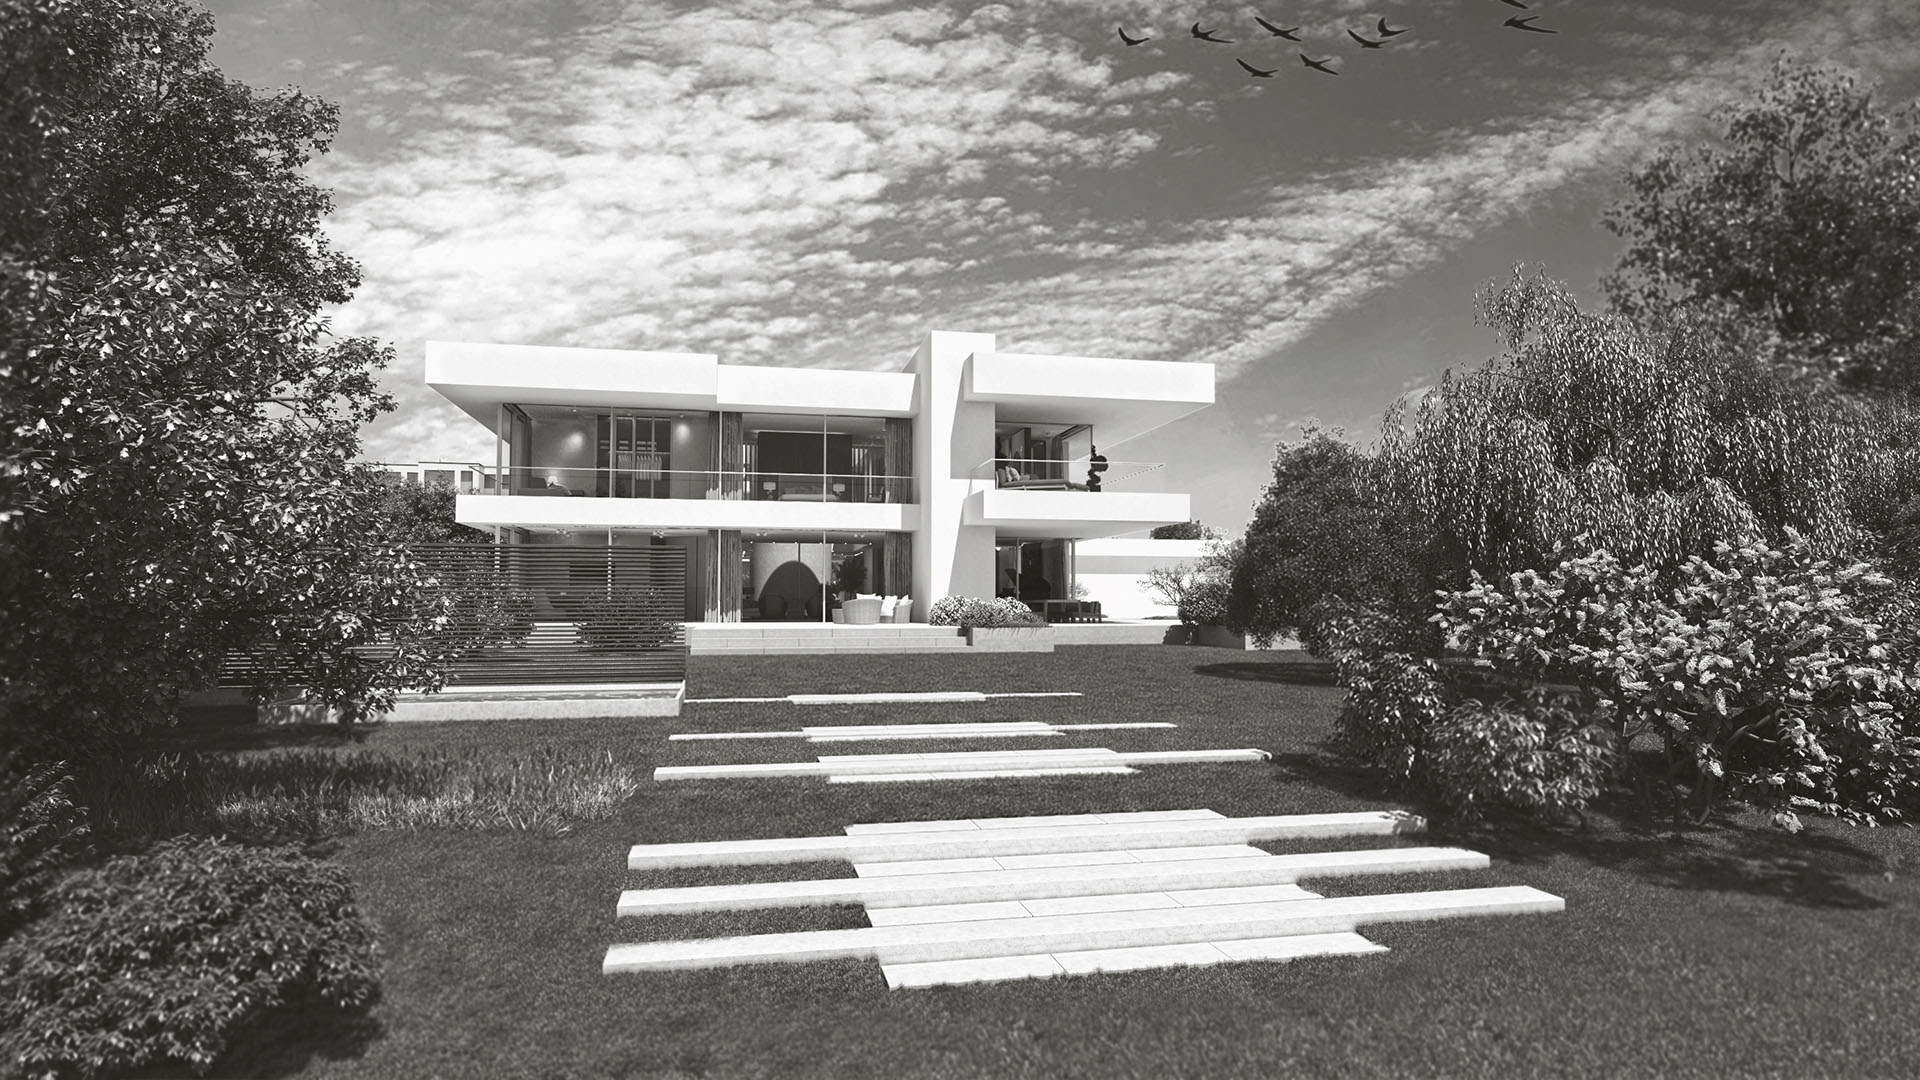 Exterieur und Interieur Visualisierung Moderne Villa